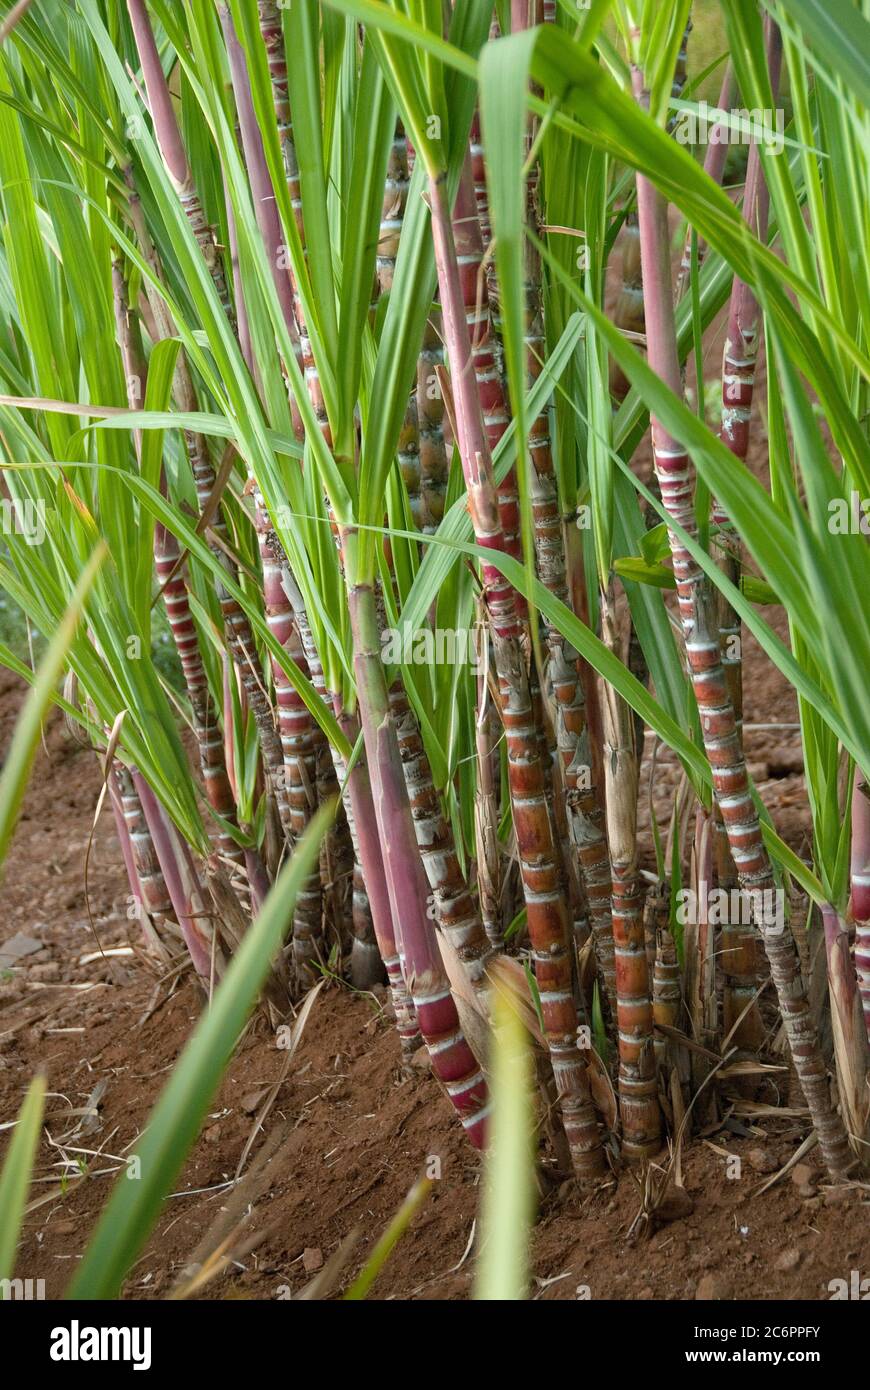 Zuckerrohr Saccharum officinarum, Sugar cane Saccharum officinarum Stock Photo